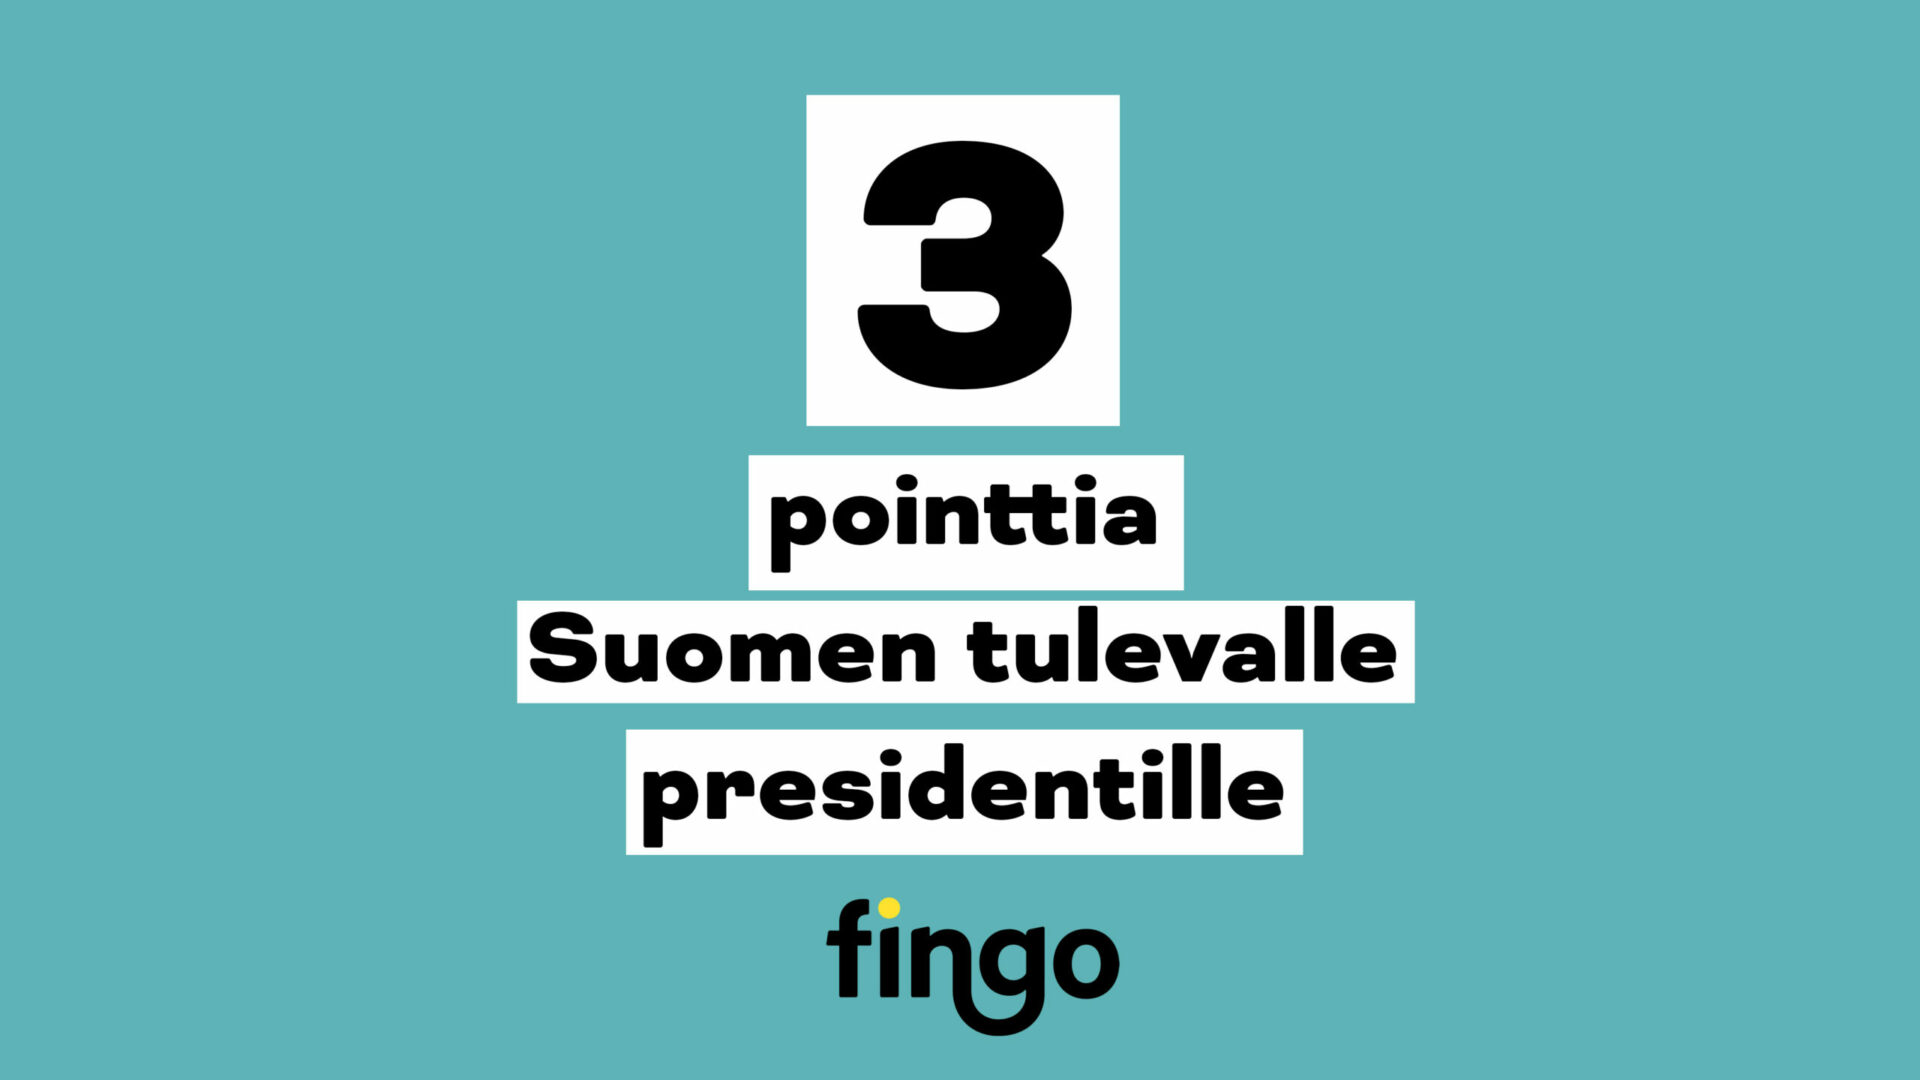 Vihreä tausta, otsikkoteksti: 3 pointtia Suomen tulevalle presidentille.